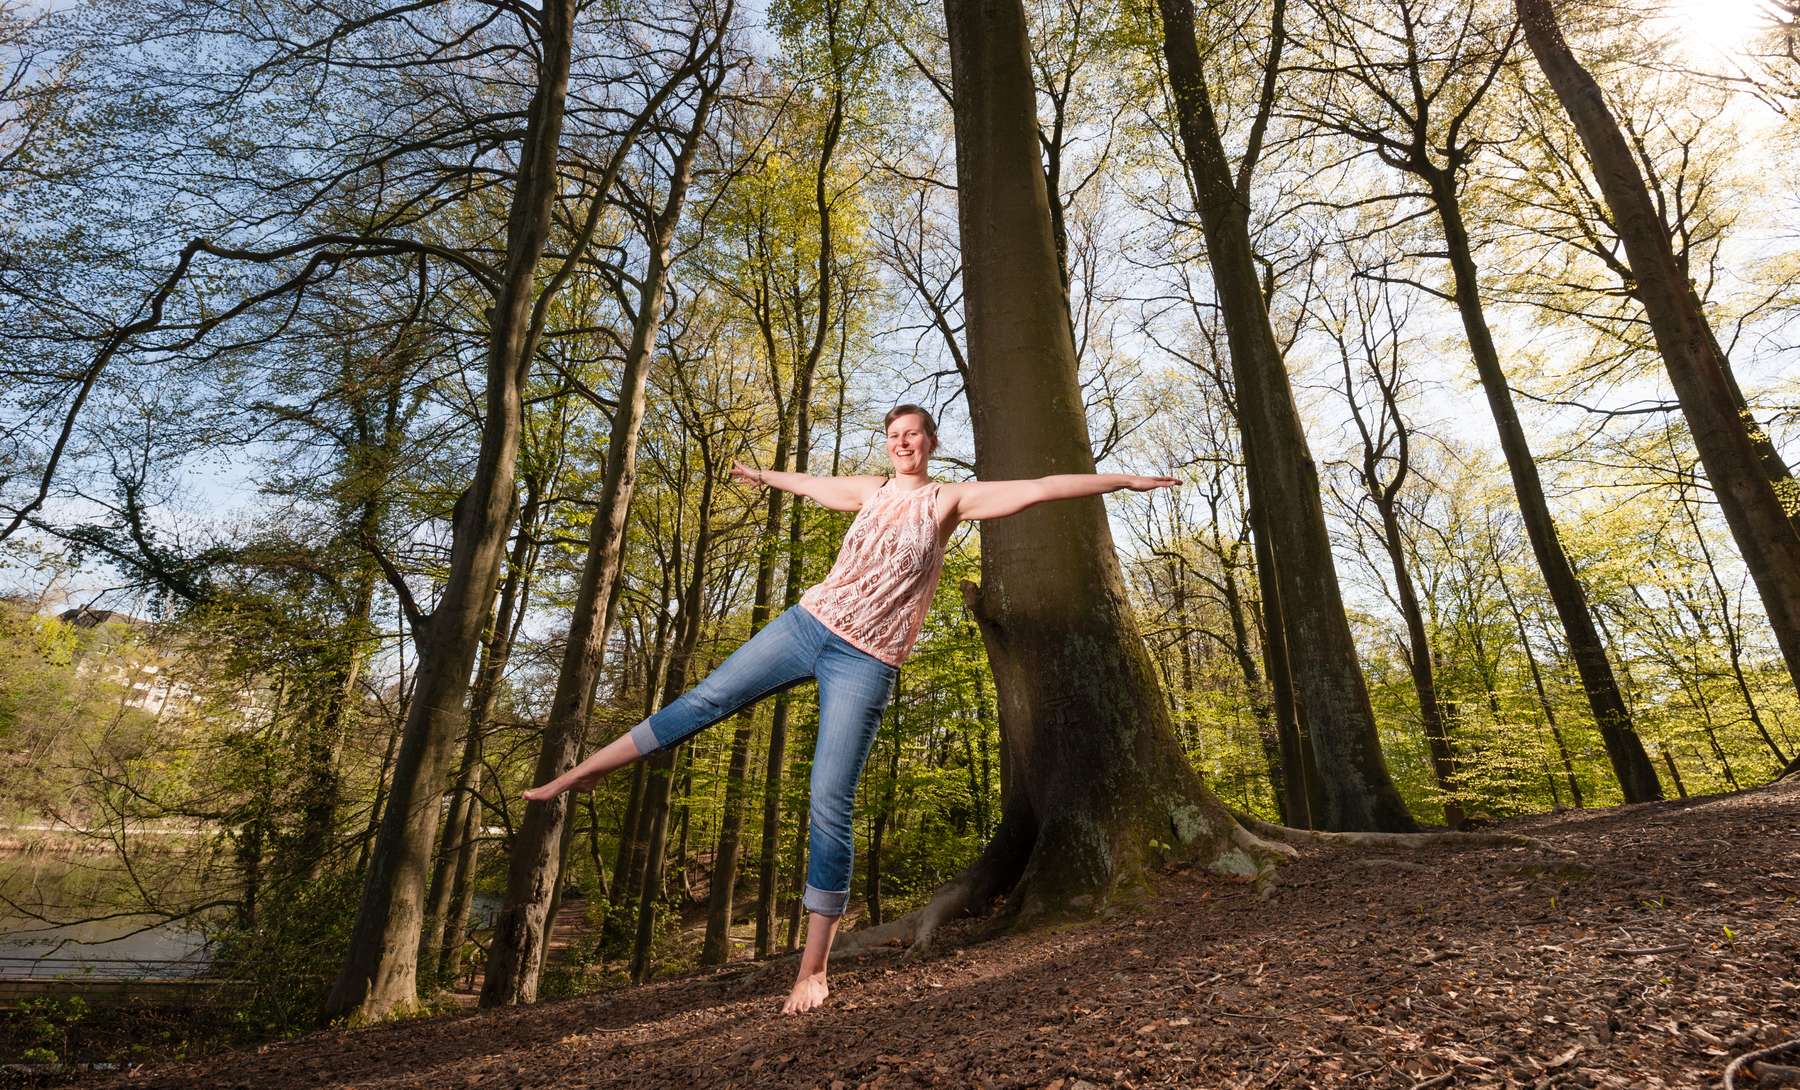 Personenfotograf Essen - Dynamisches Frühlings-Fotoshooting mit Barfuß-Balance-Übung einer jungen Frau im grünen Stadtwald der Margarethenhöhe inmitten der Stadt Essen